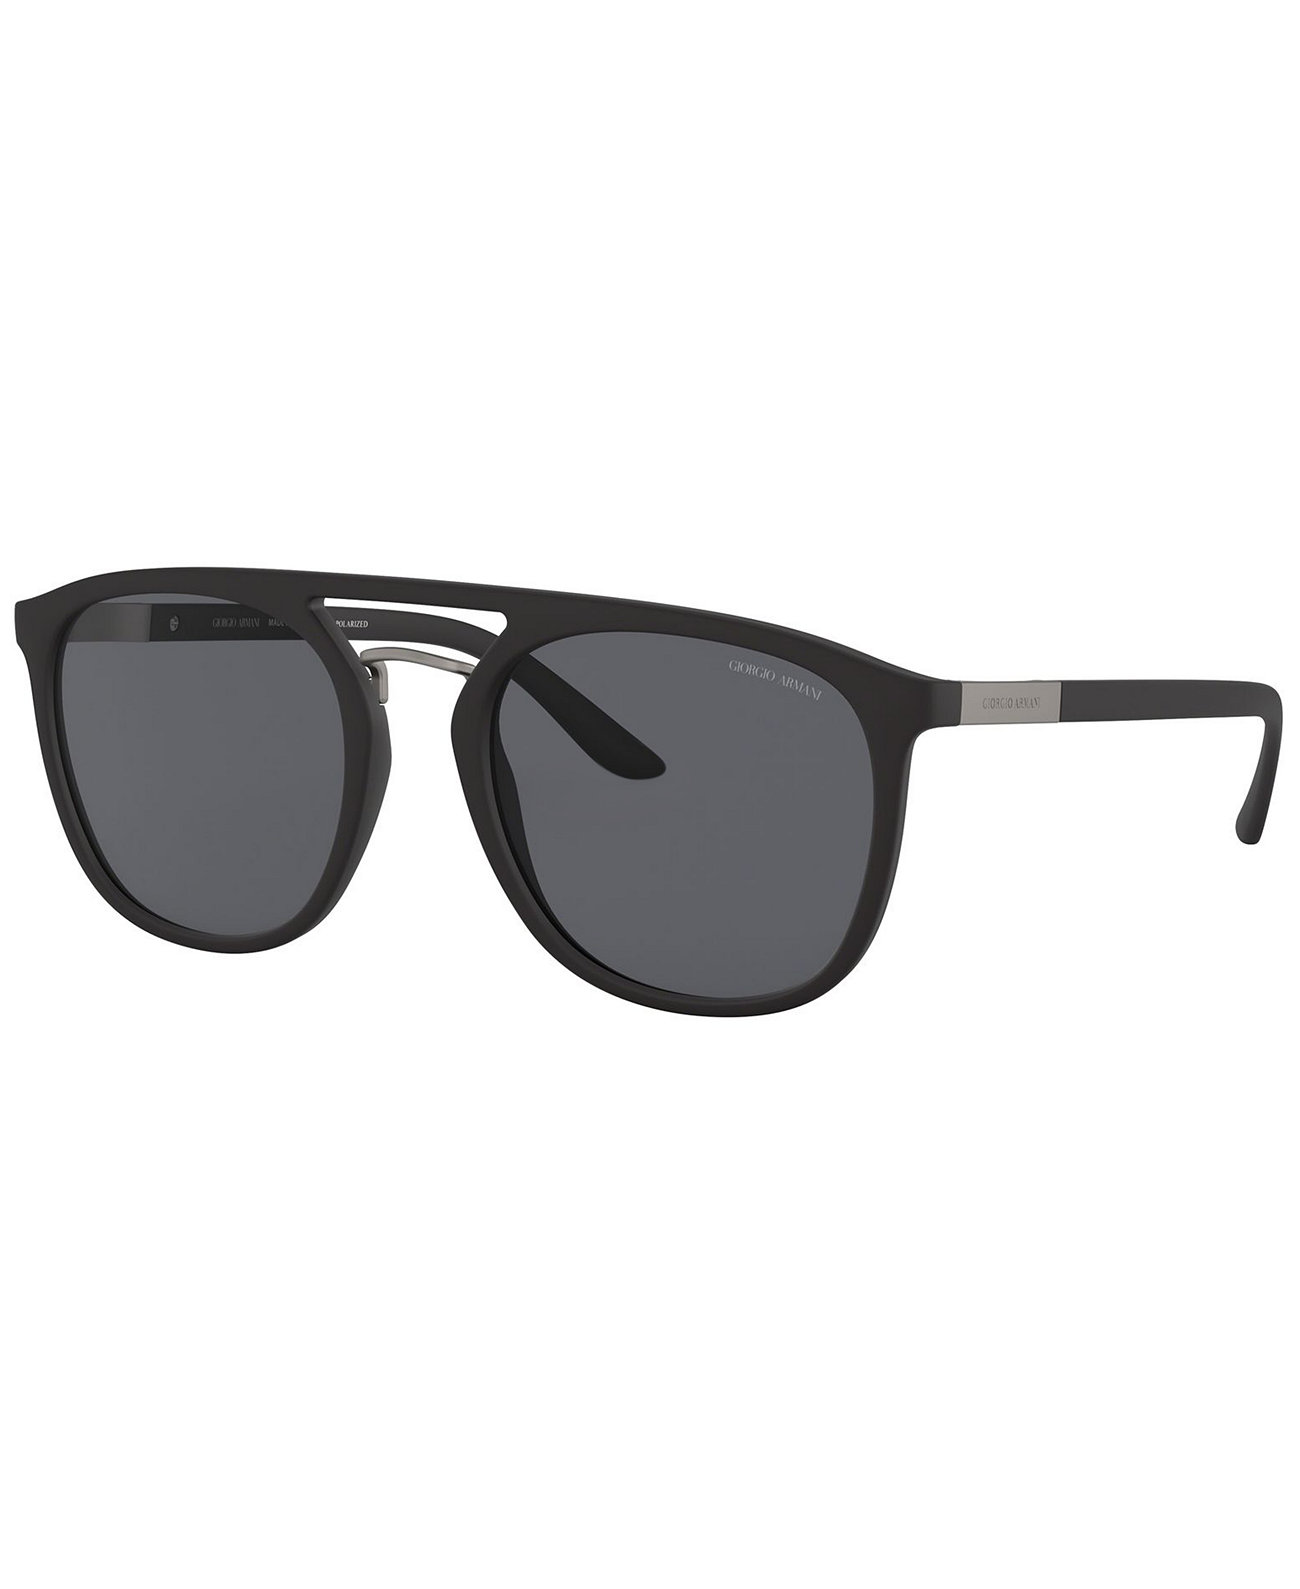 Поляризованные солнцезащитные очки, AR8118 53 Giorgio Armani